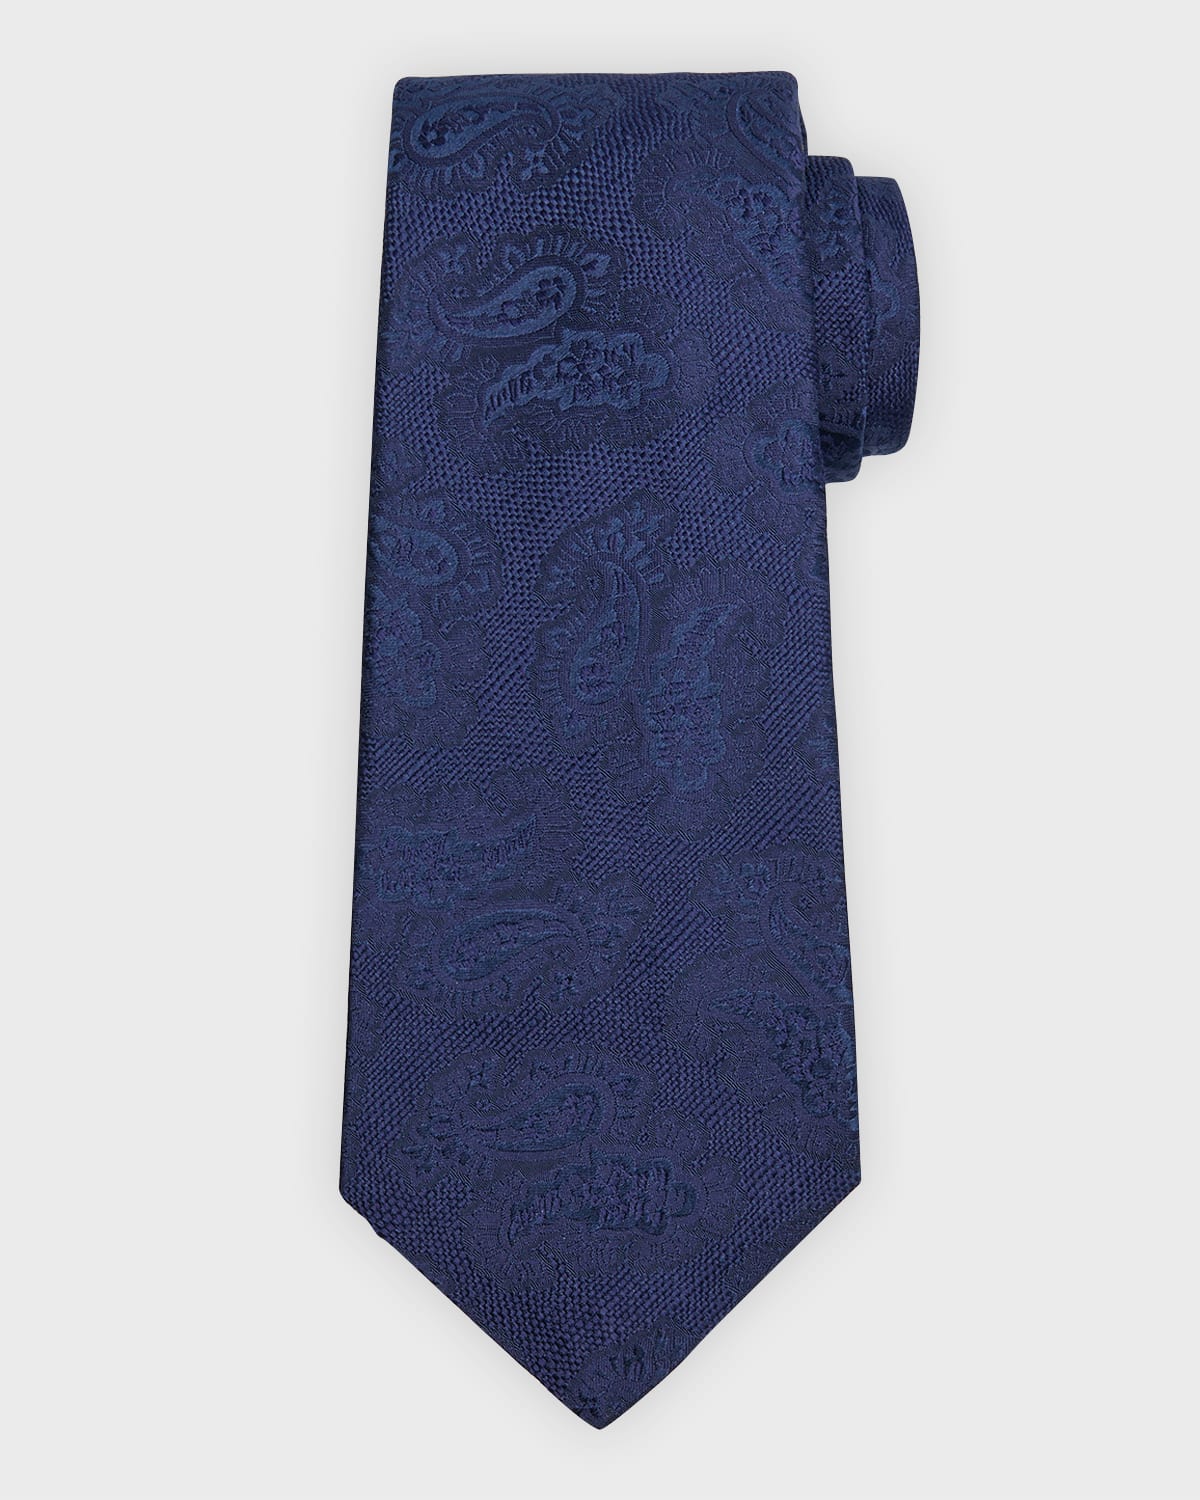 Men's Paisley Jacquard Silk Tie